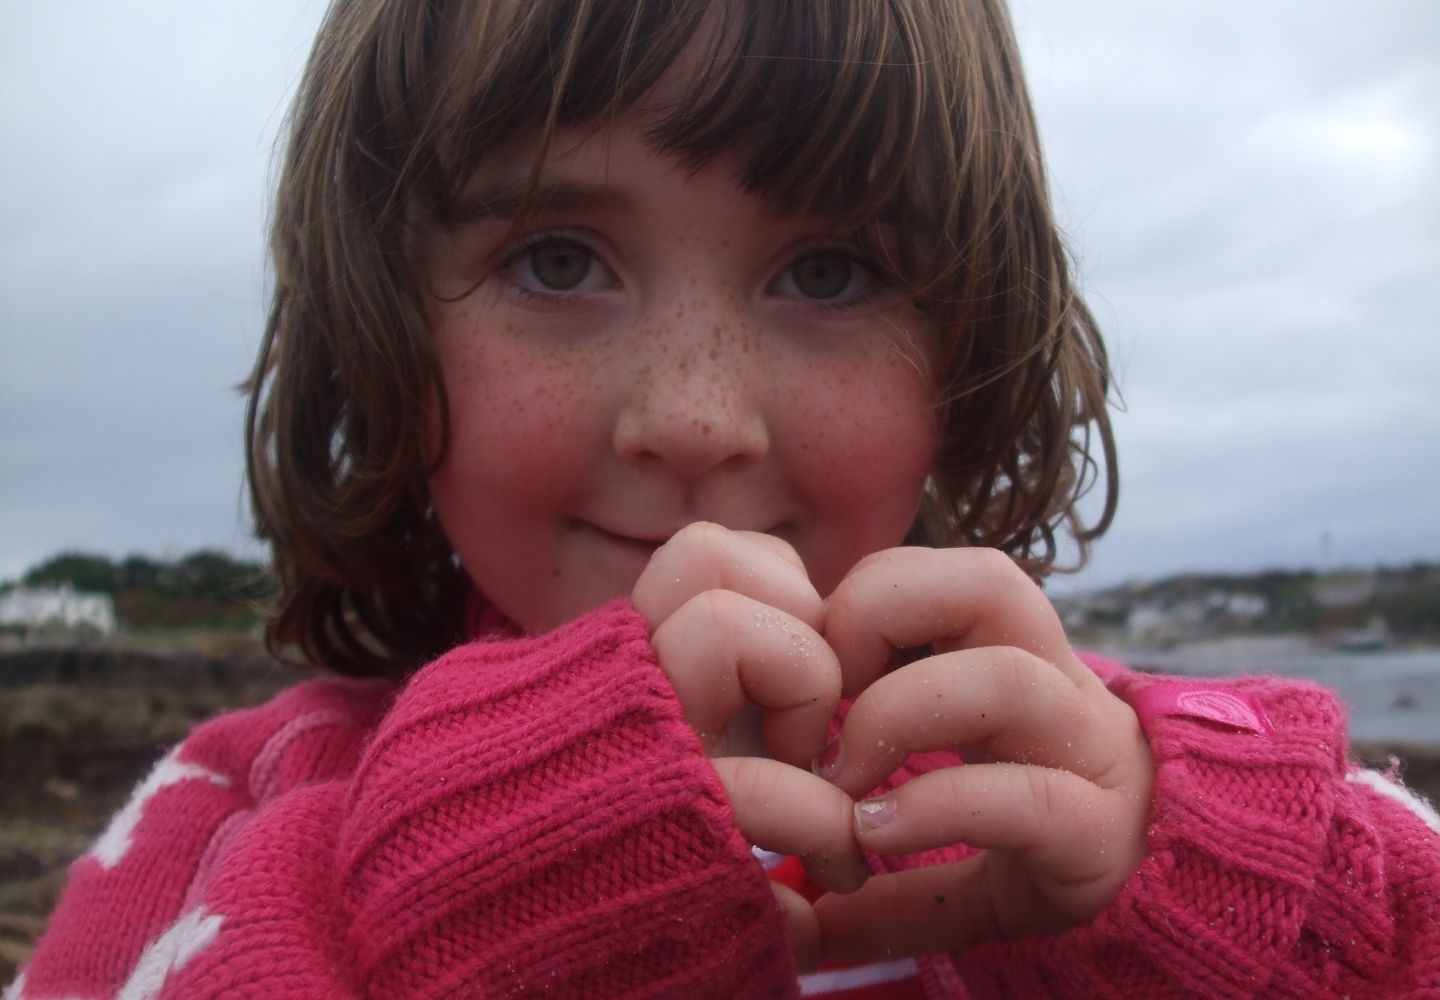 A little girl wearing a pink jumper 